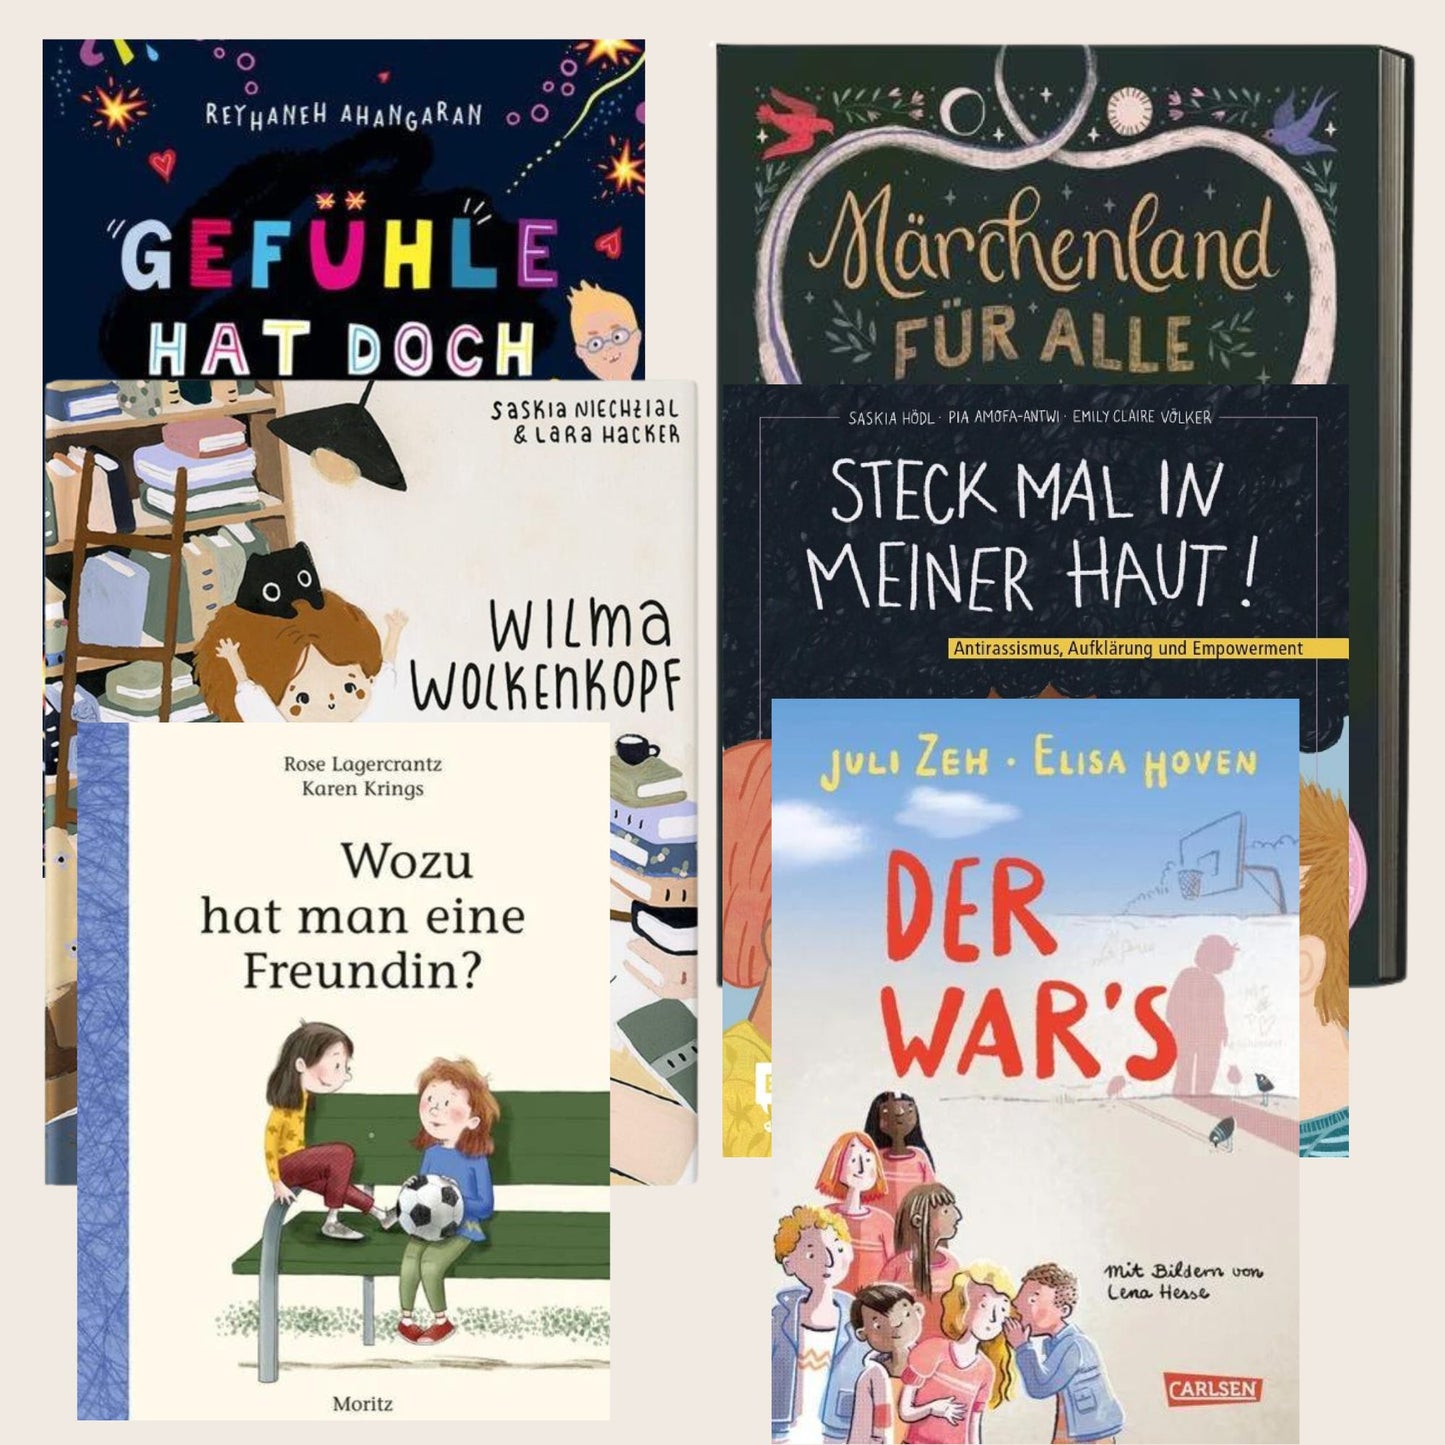 Grundschul-Bücherpaket I "Kleine Große Einsichten" für Alter 6-8 Jahre -  - Who said